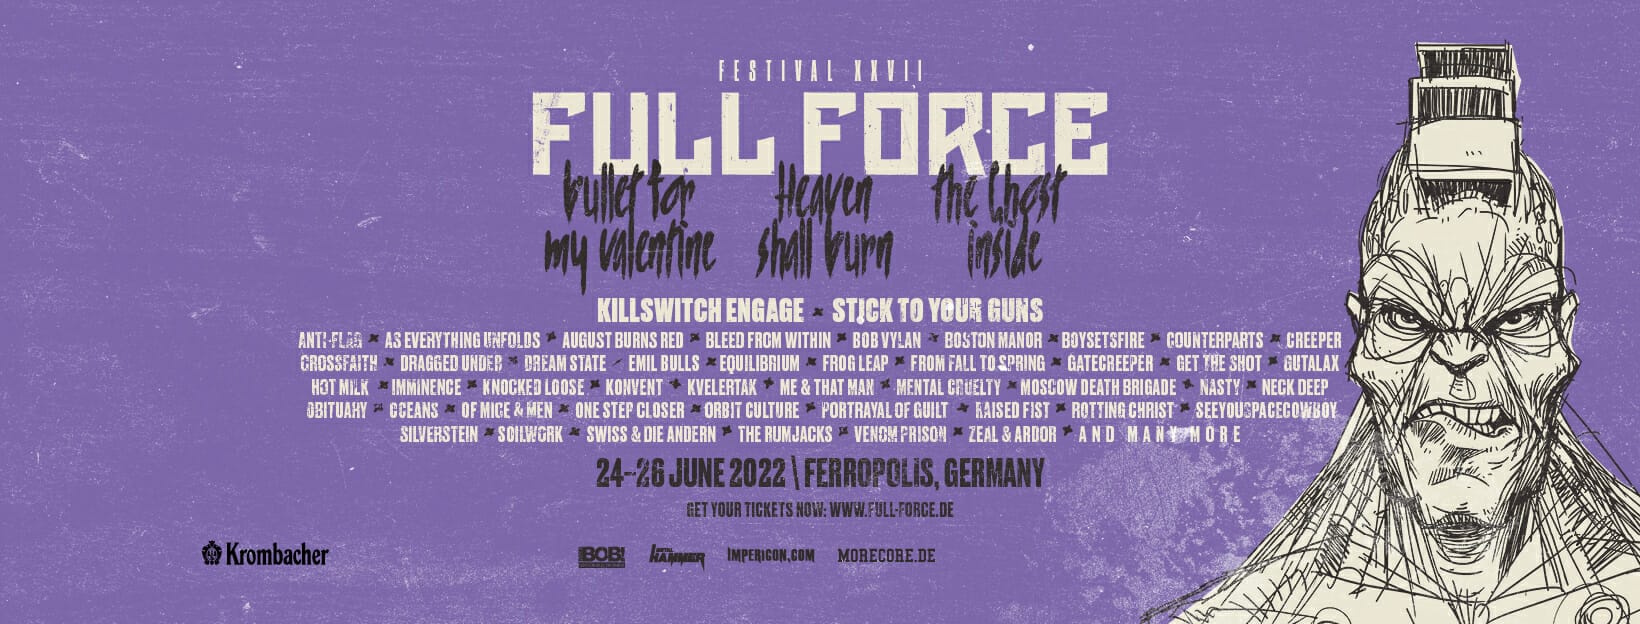 Full Force Festival 2022